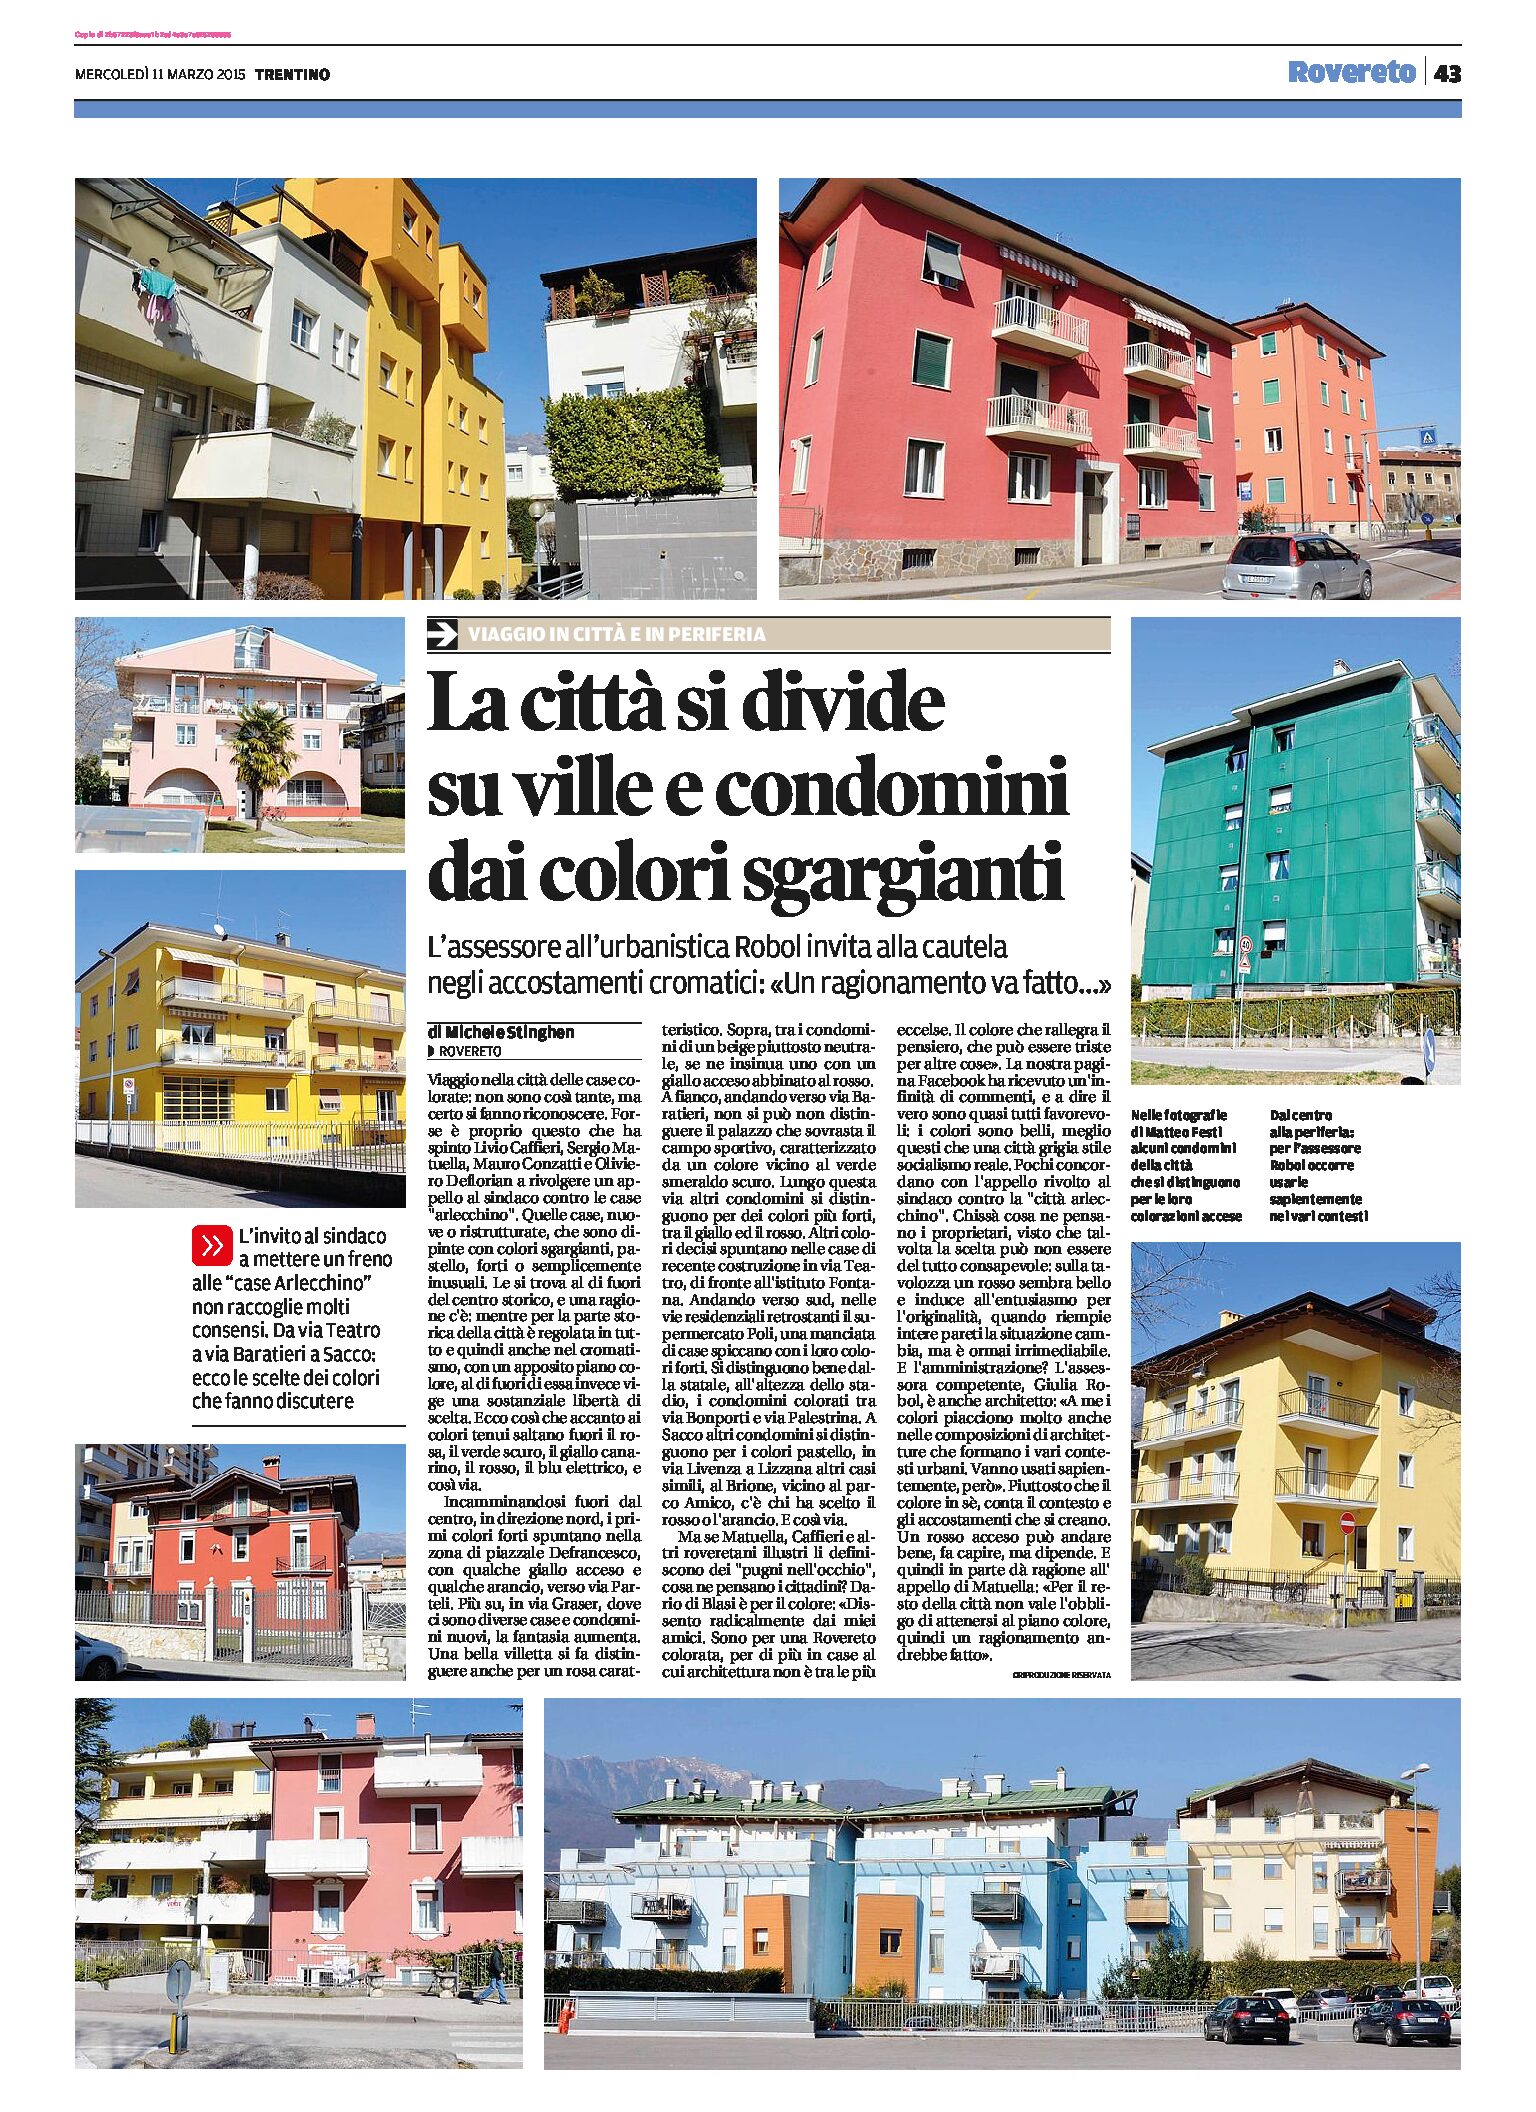 Rovereto: la città si divide sui colori sgargianti di ville e condomini